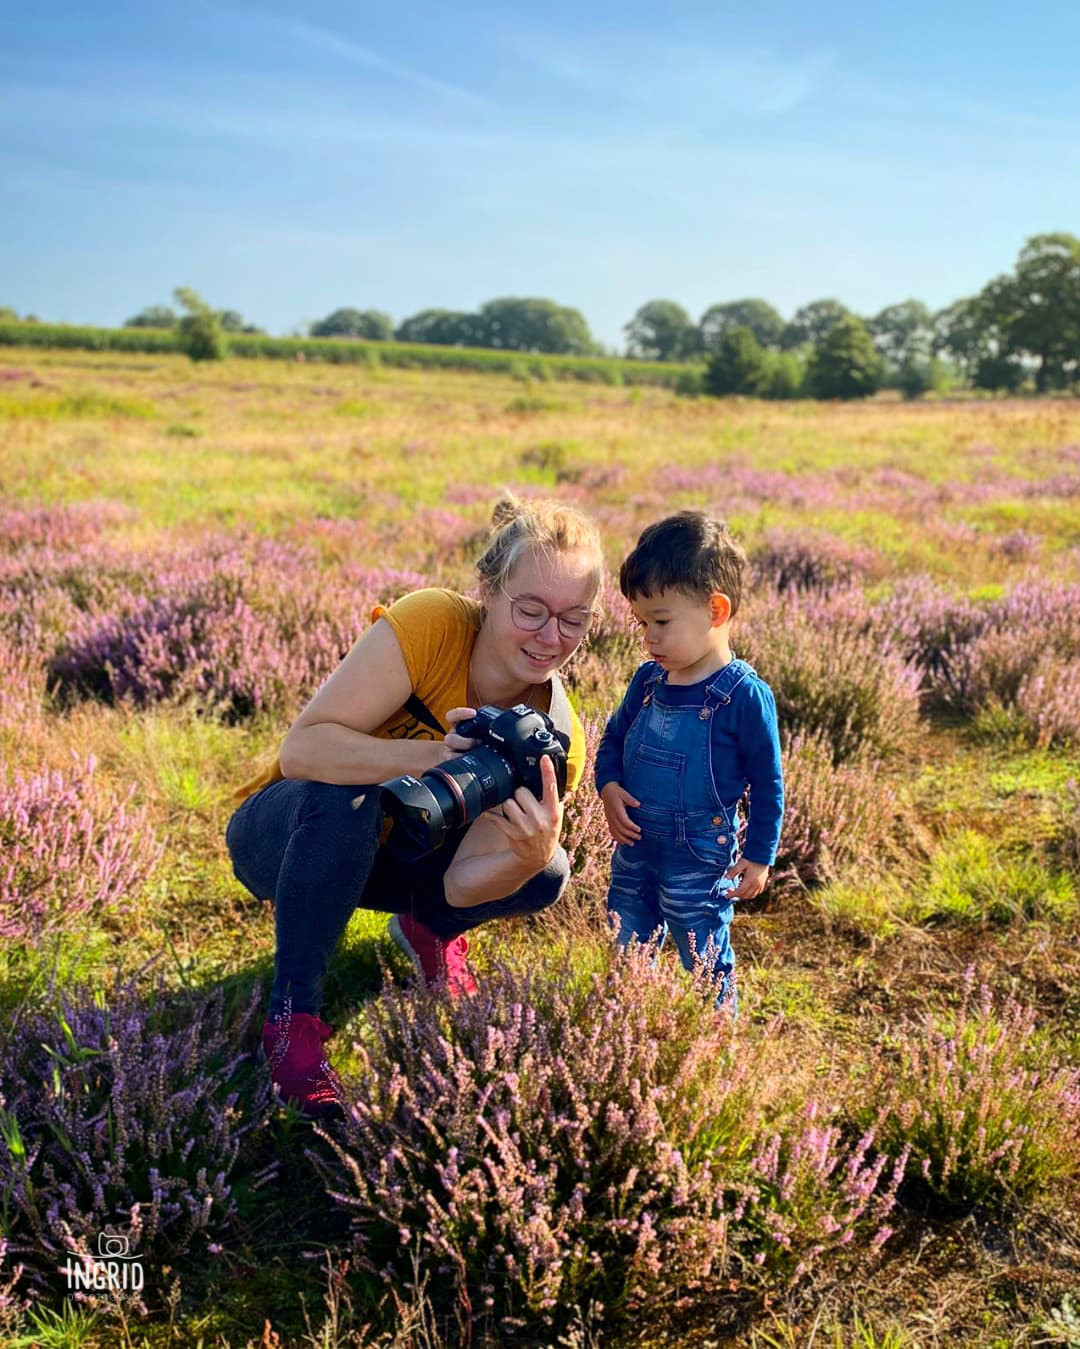 Ingrid de fotograaf laat haar fotos zien aan jongetje tijdens een fotoshoot op de paarse heide